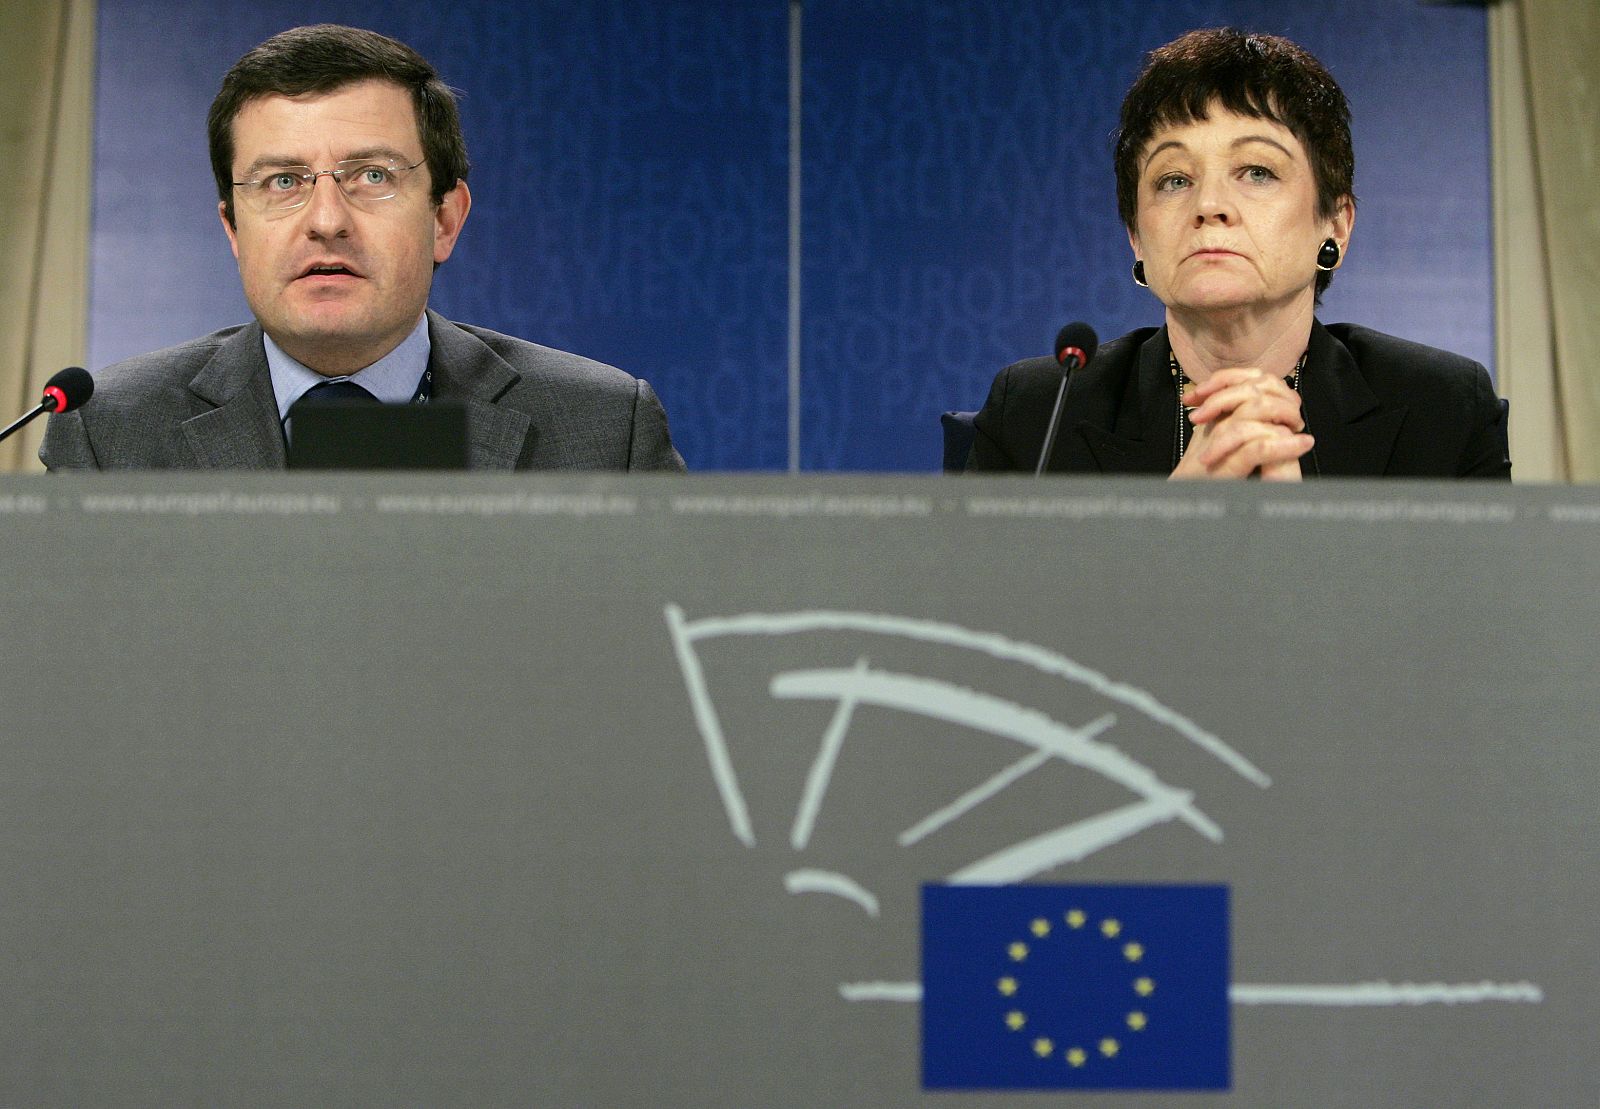 Ignasi Guardans, miembro del Parlamento Europeo (CIU) durante una rueda de prensa en 2007